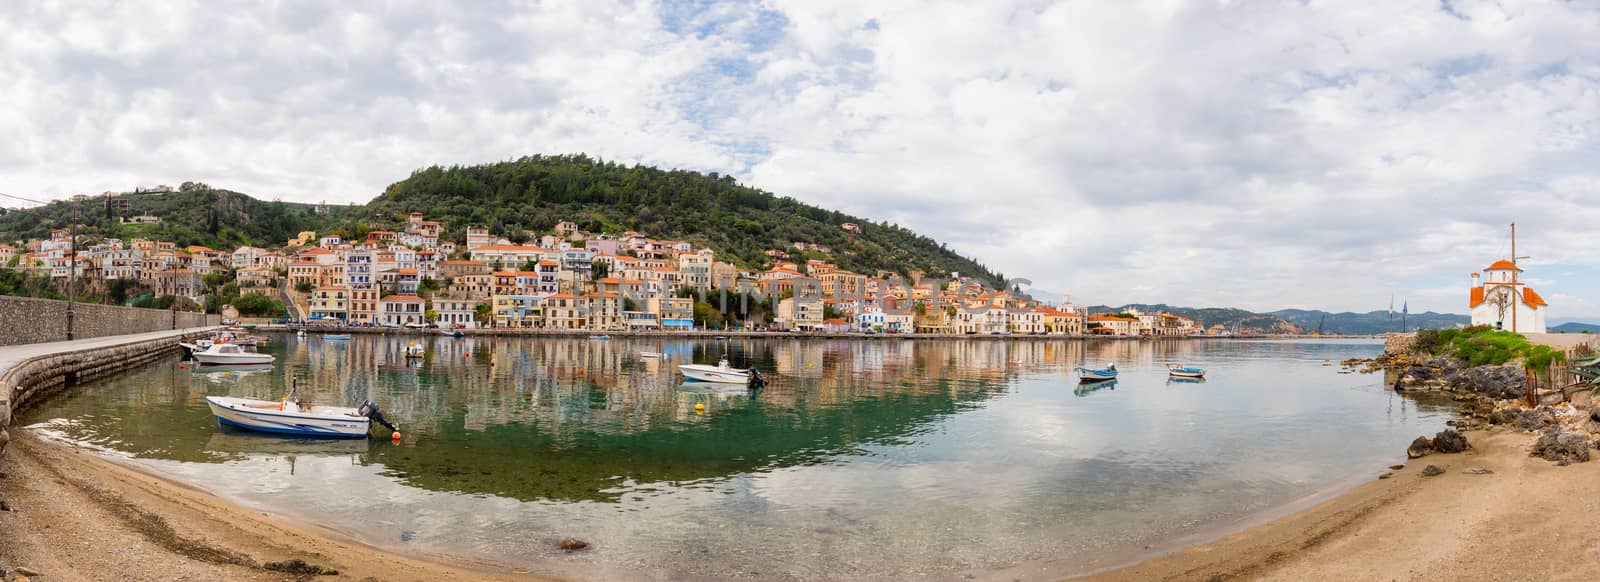 GITHEIO, GREECE - NOVEMBER 19,2016: The port of Githeio with beautiful houses, Laconia, Peloponnese,Greece